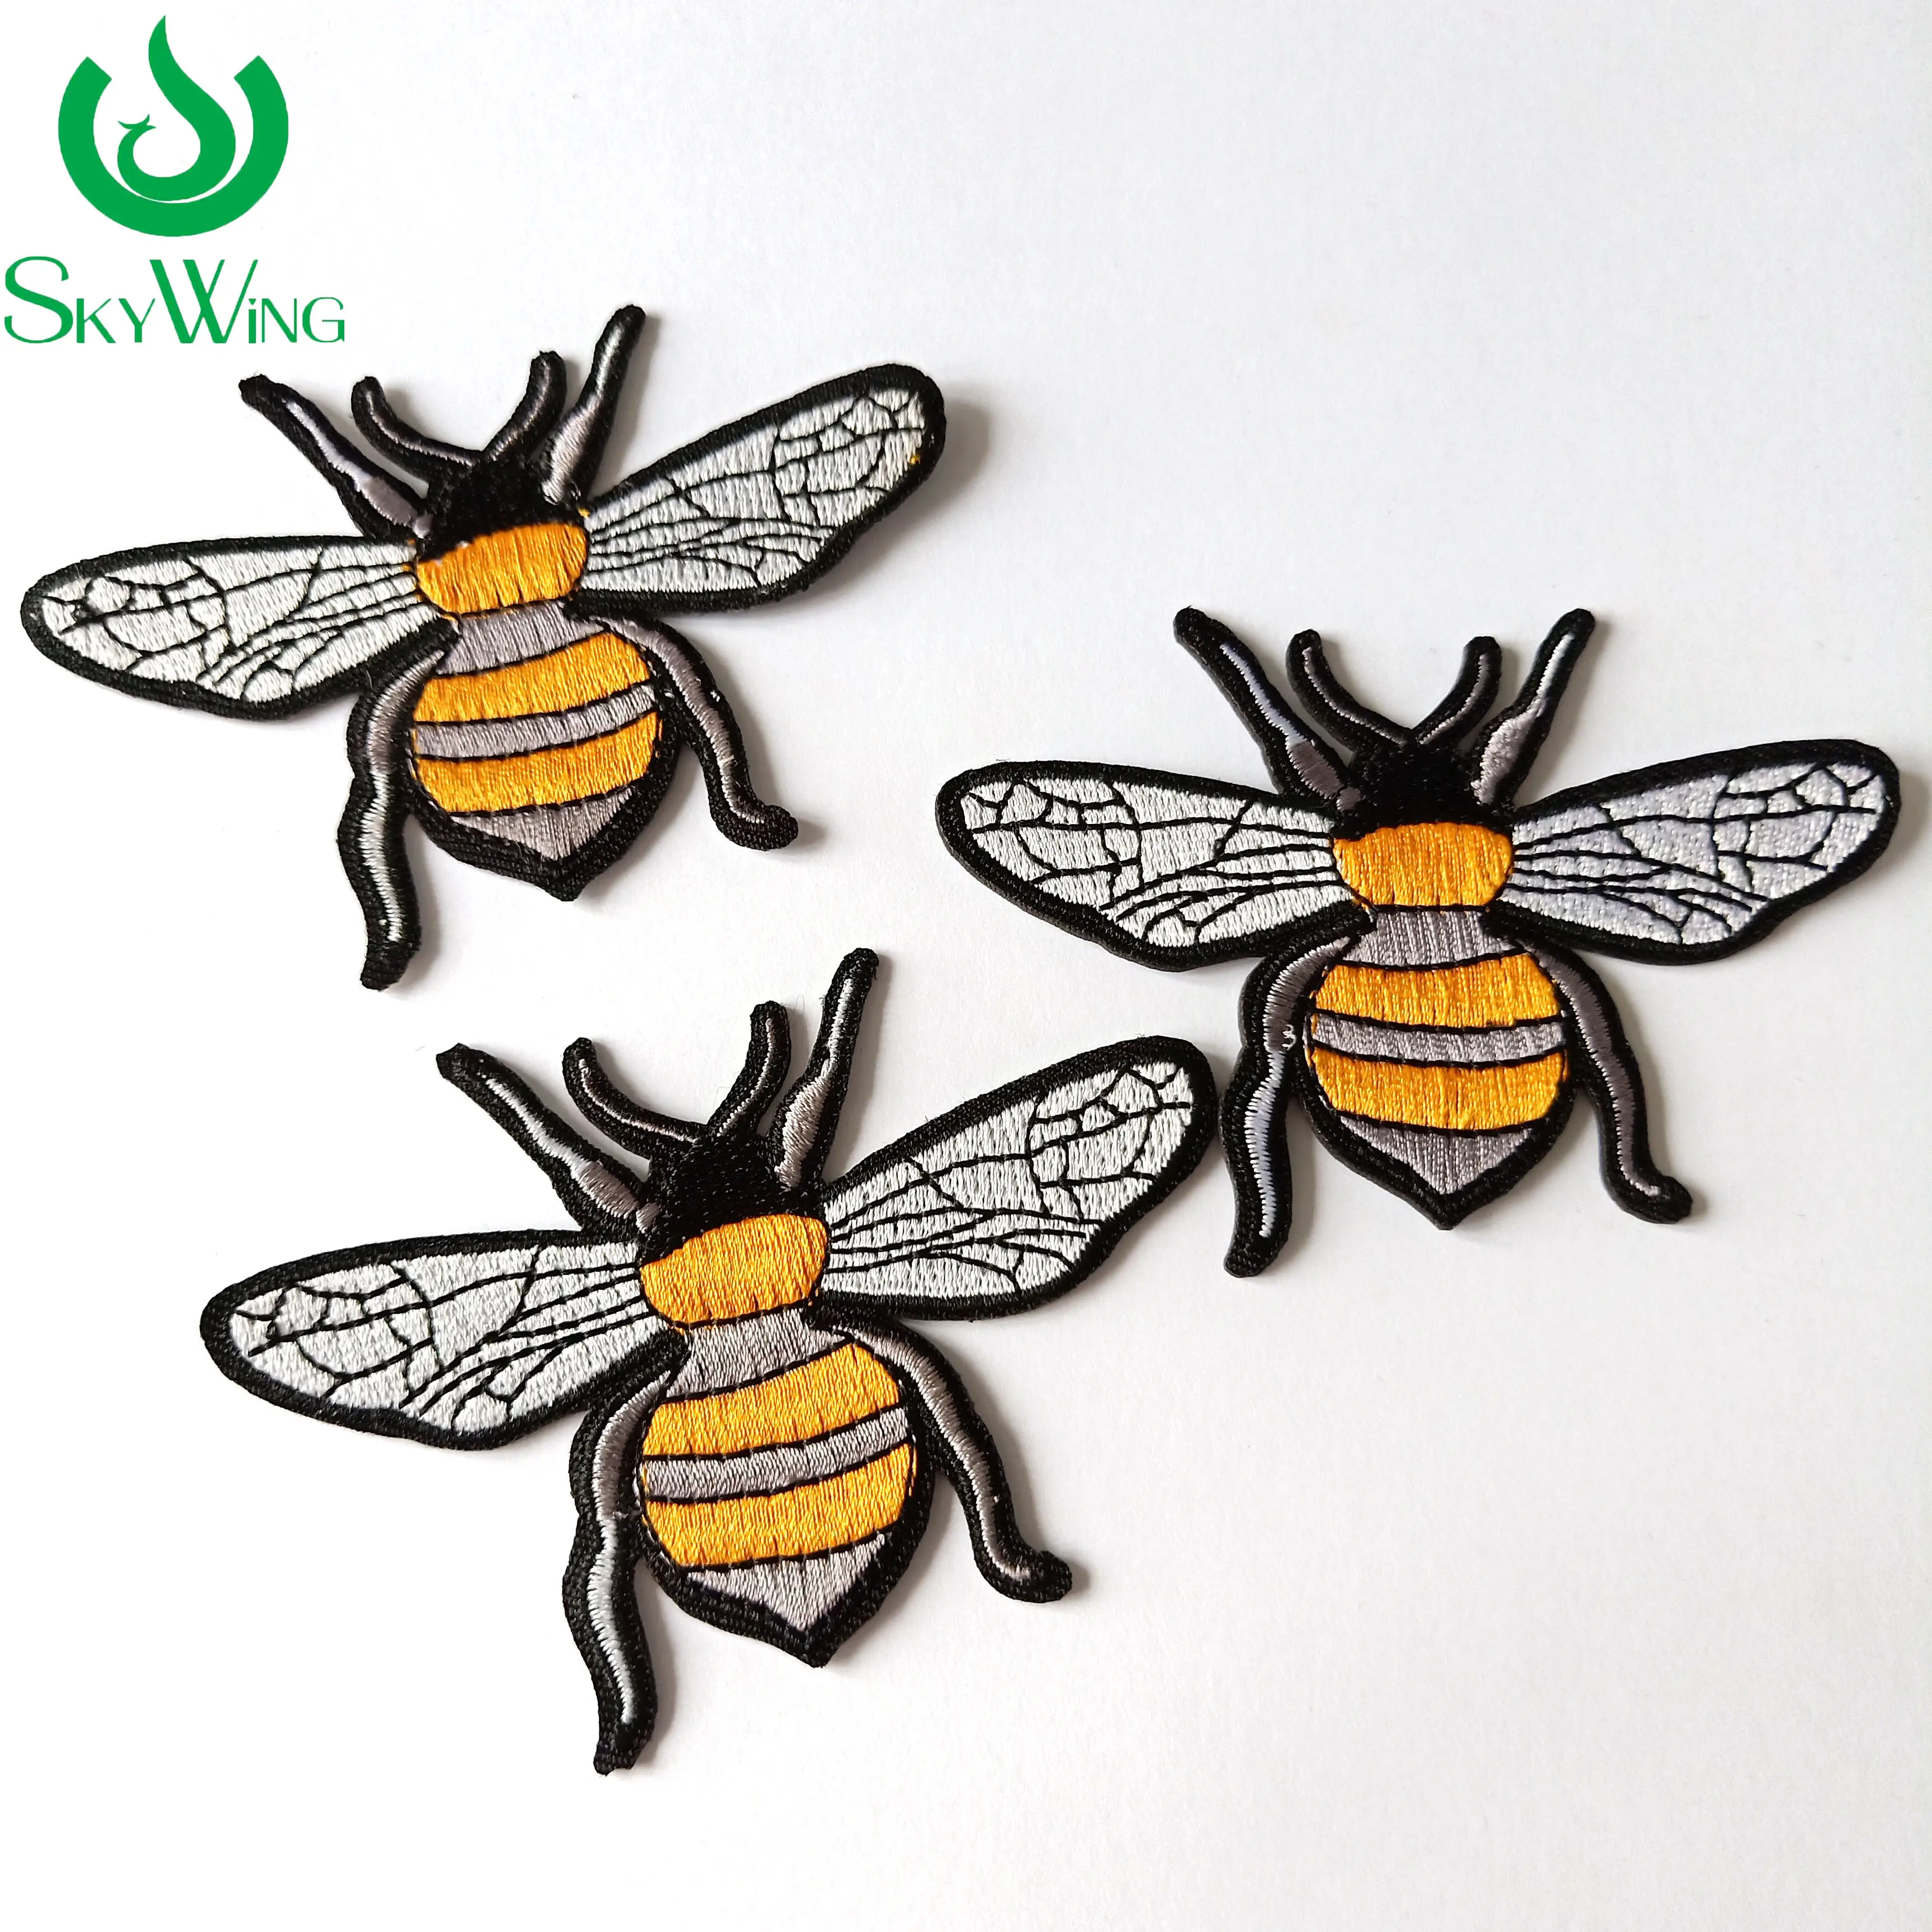 사용자 정의 디자인 꿀벌 패치 동물 전체 수 놓은 패치 셔츠 액세서리 사랑스러운 꿀벌 패치 hoody 트랙 정장 철